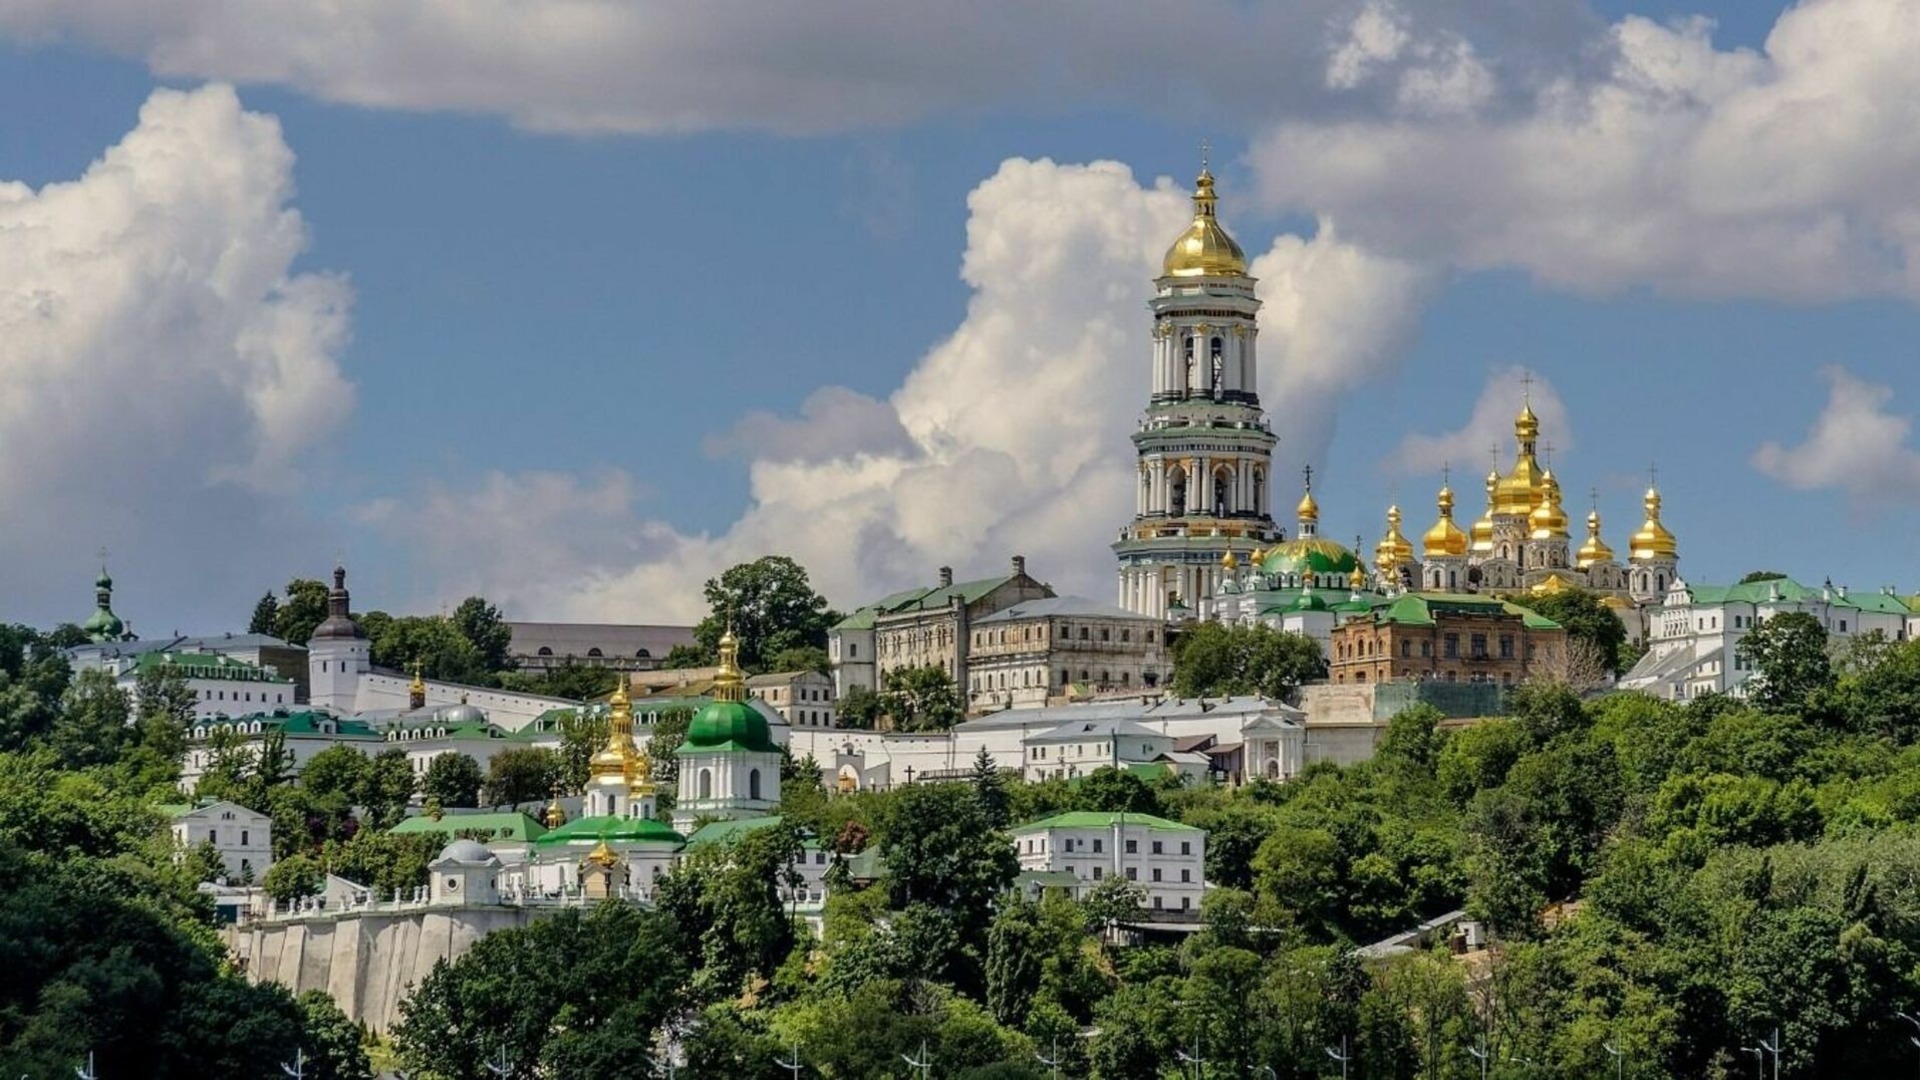 СВР: мощи из Киево-Печерской лавры планируют вывезти в ЕС